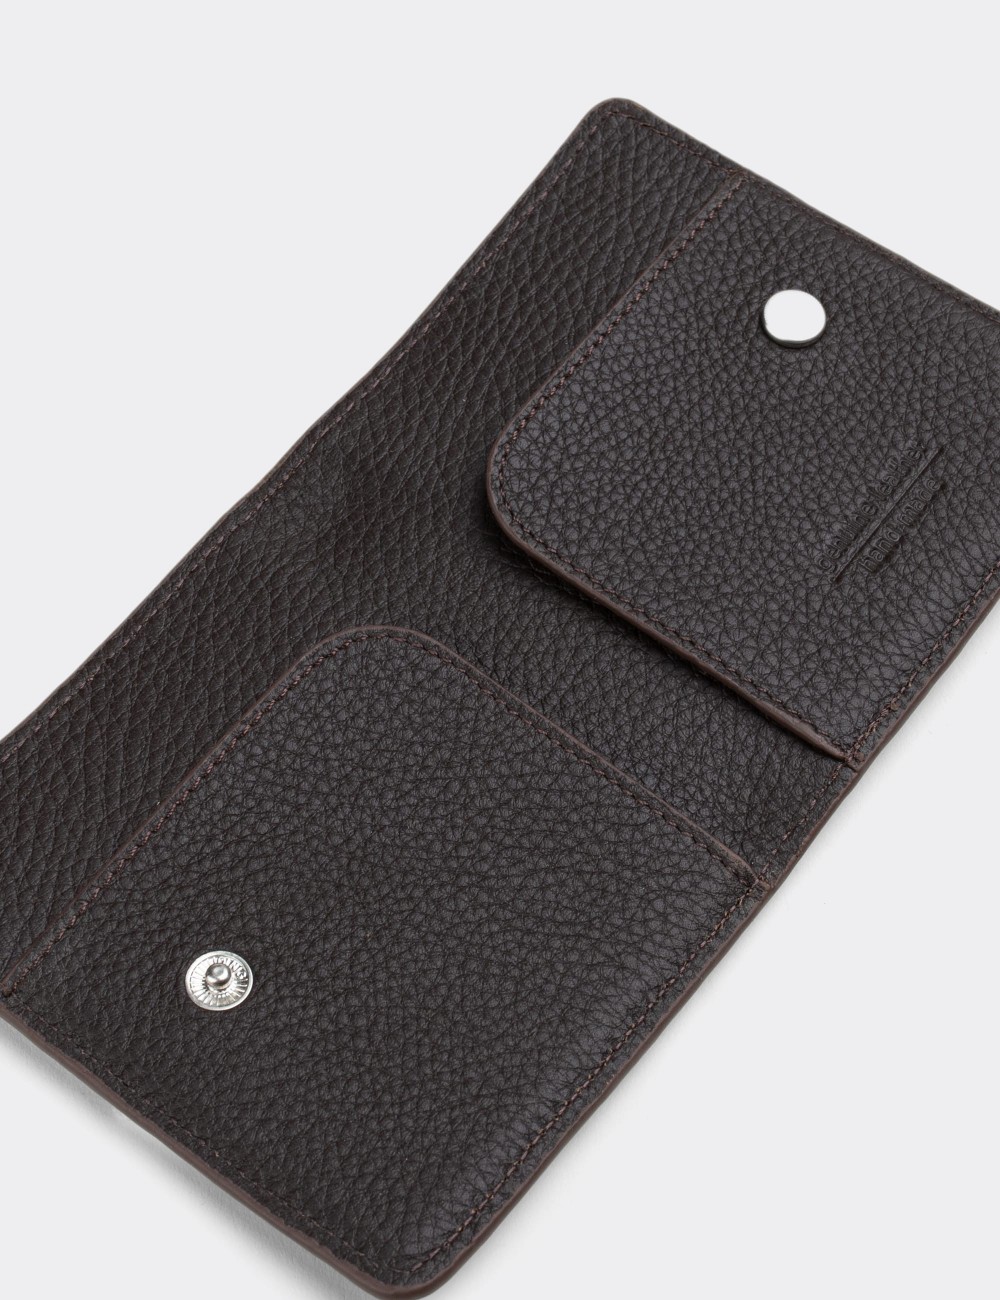  Leather Brown Men's Wallet - 00512MKHVZ01